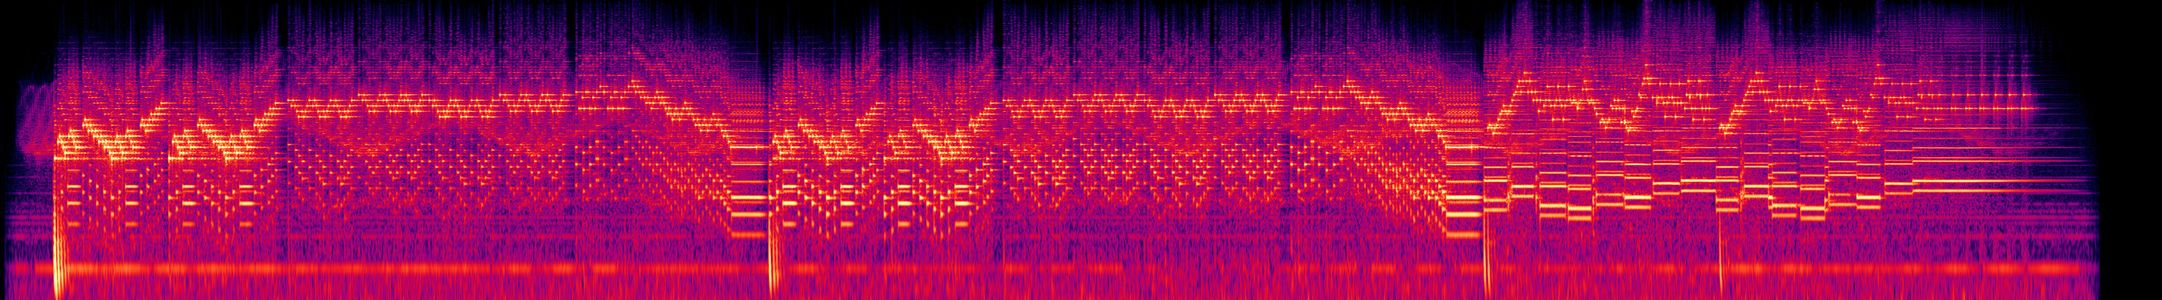 Effervescence - Spectrogram.jpg